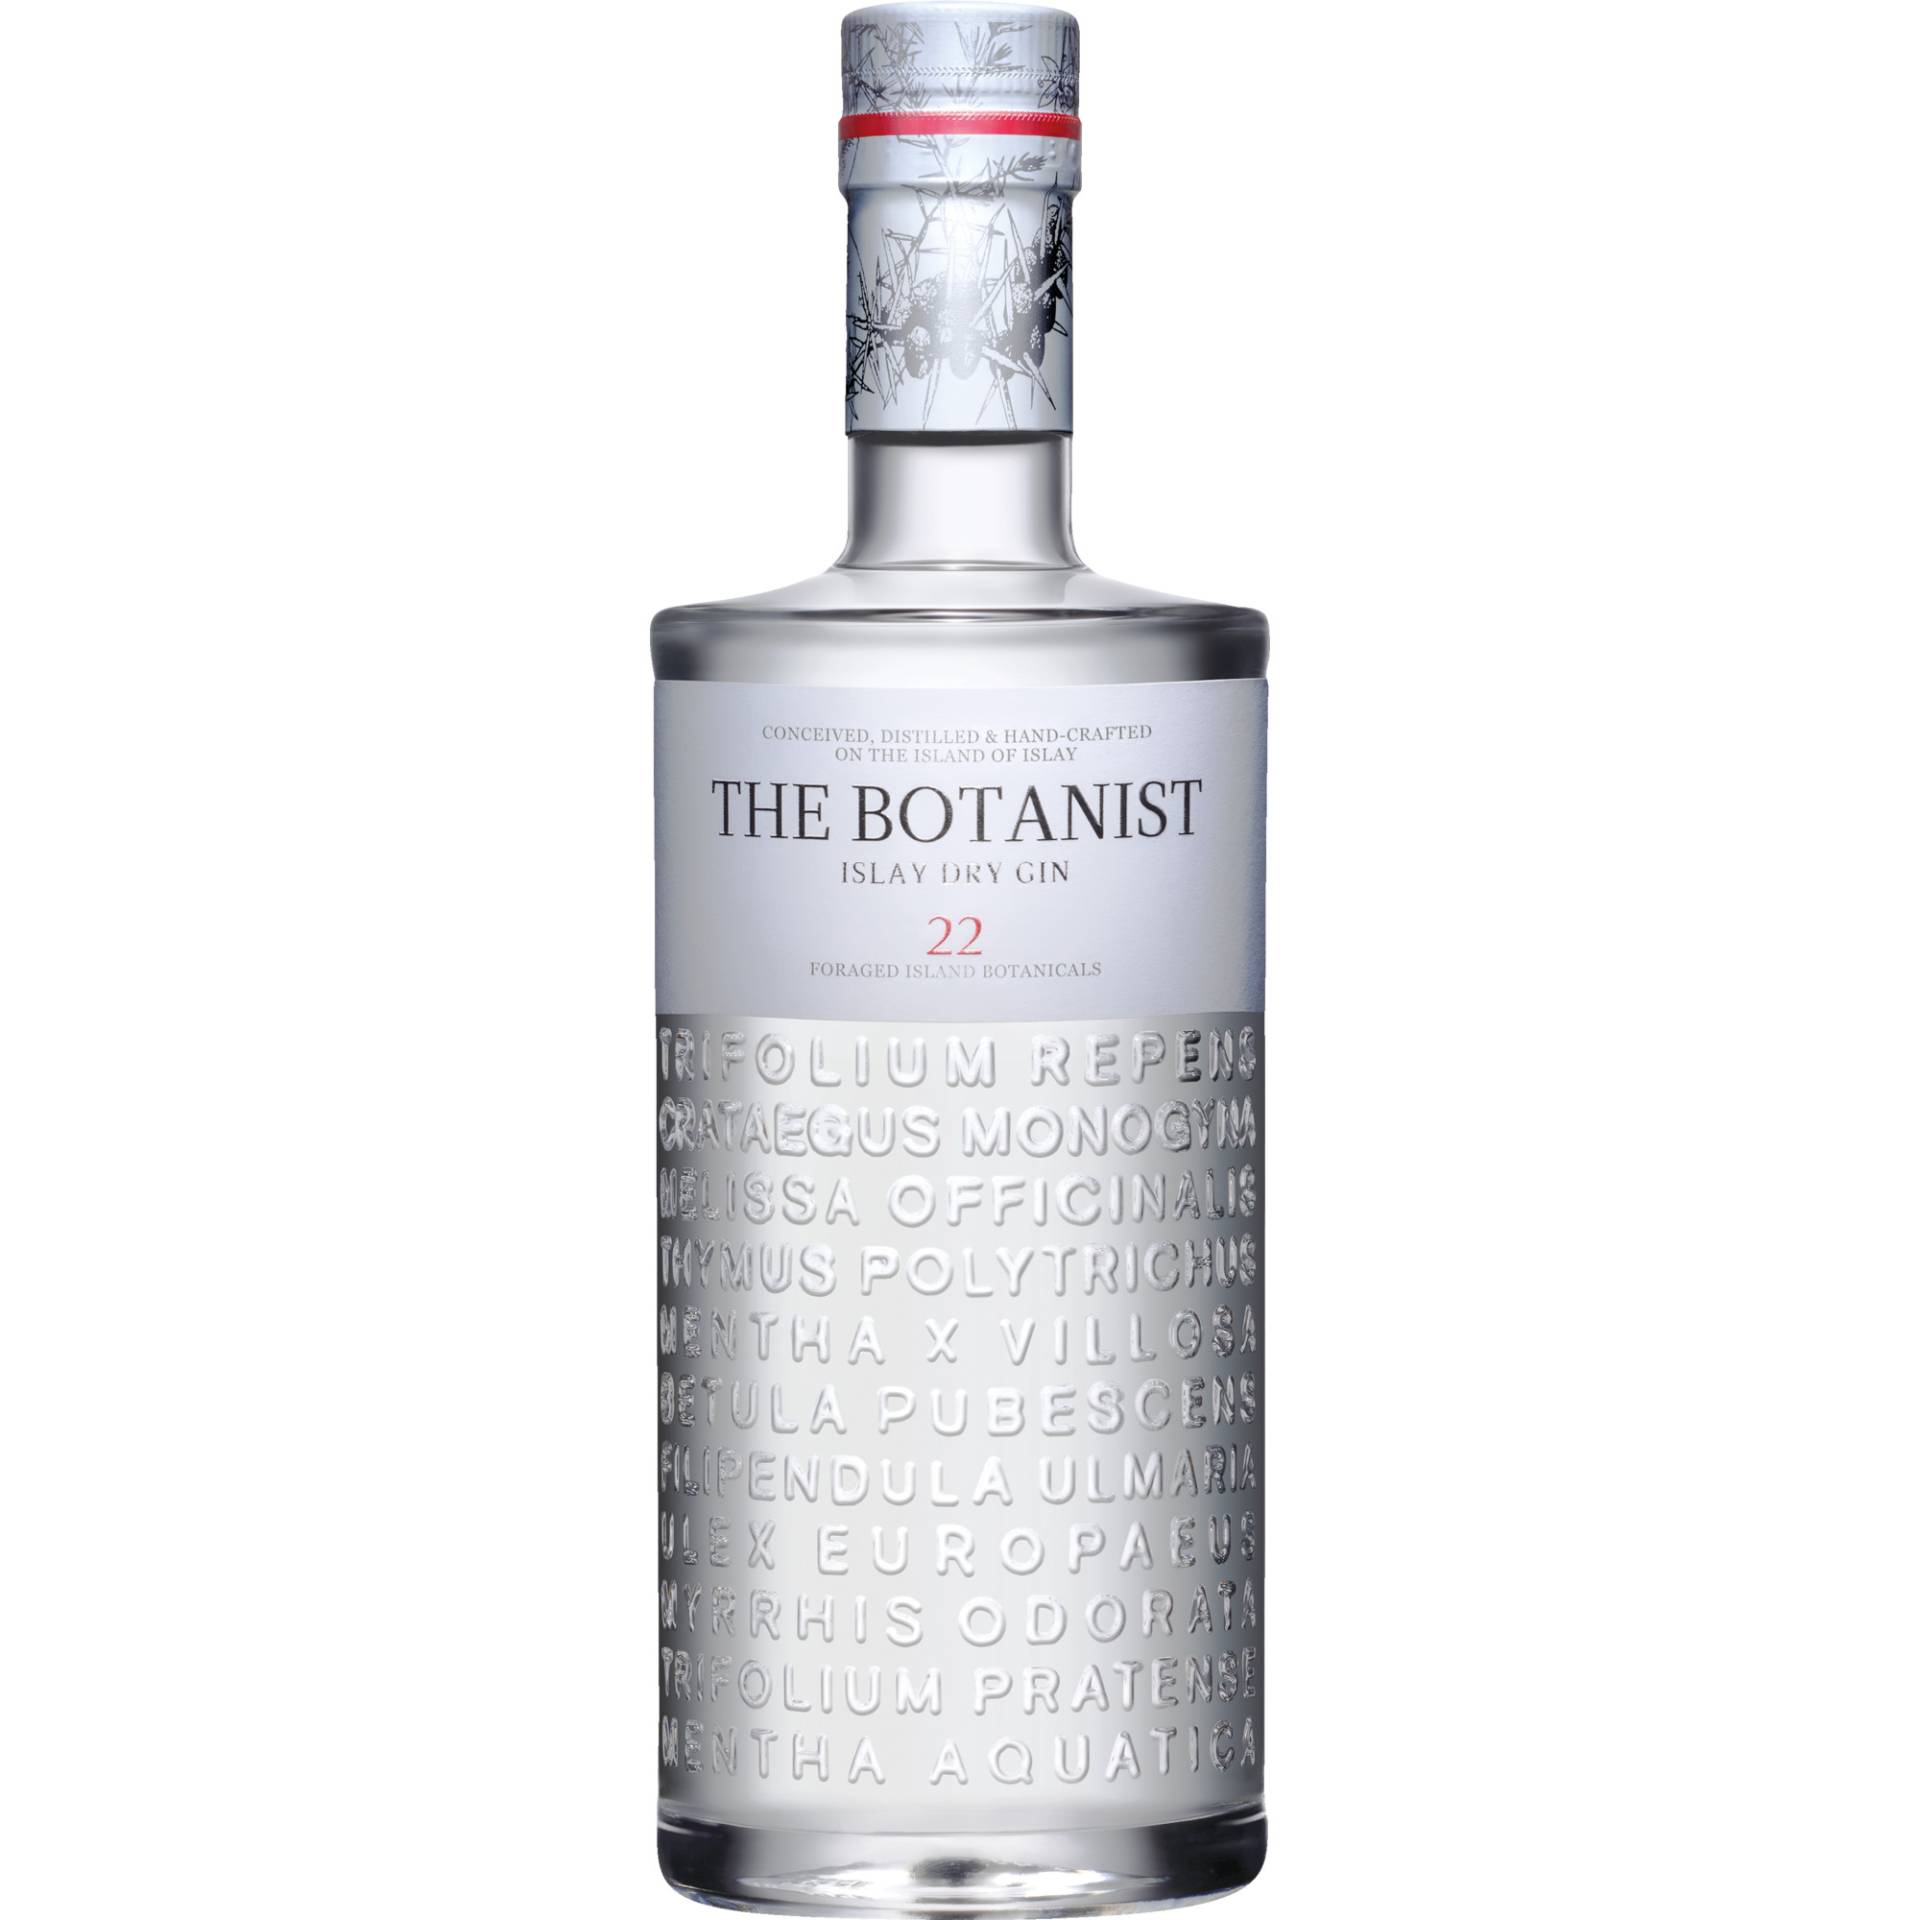 The Botanist Islay Dry Gin, Schottland, 0,7L, 46,0% Vol., Schottland, Spirituosen von Bruichladdich Distillery , Isle of Islay,  Scotland, Great Britain